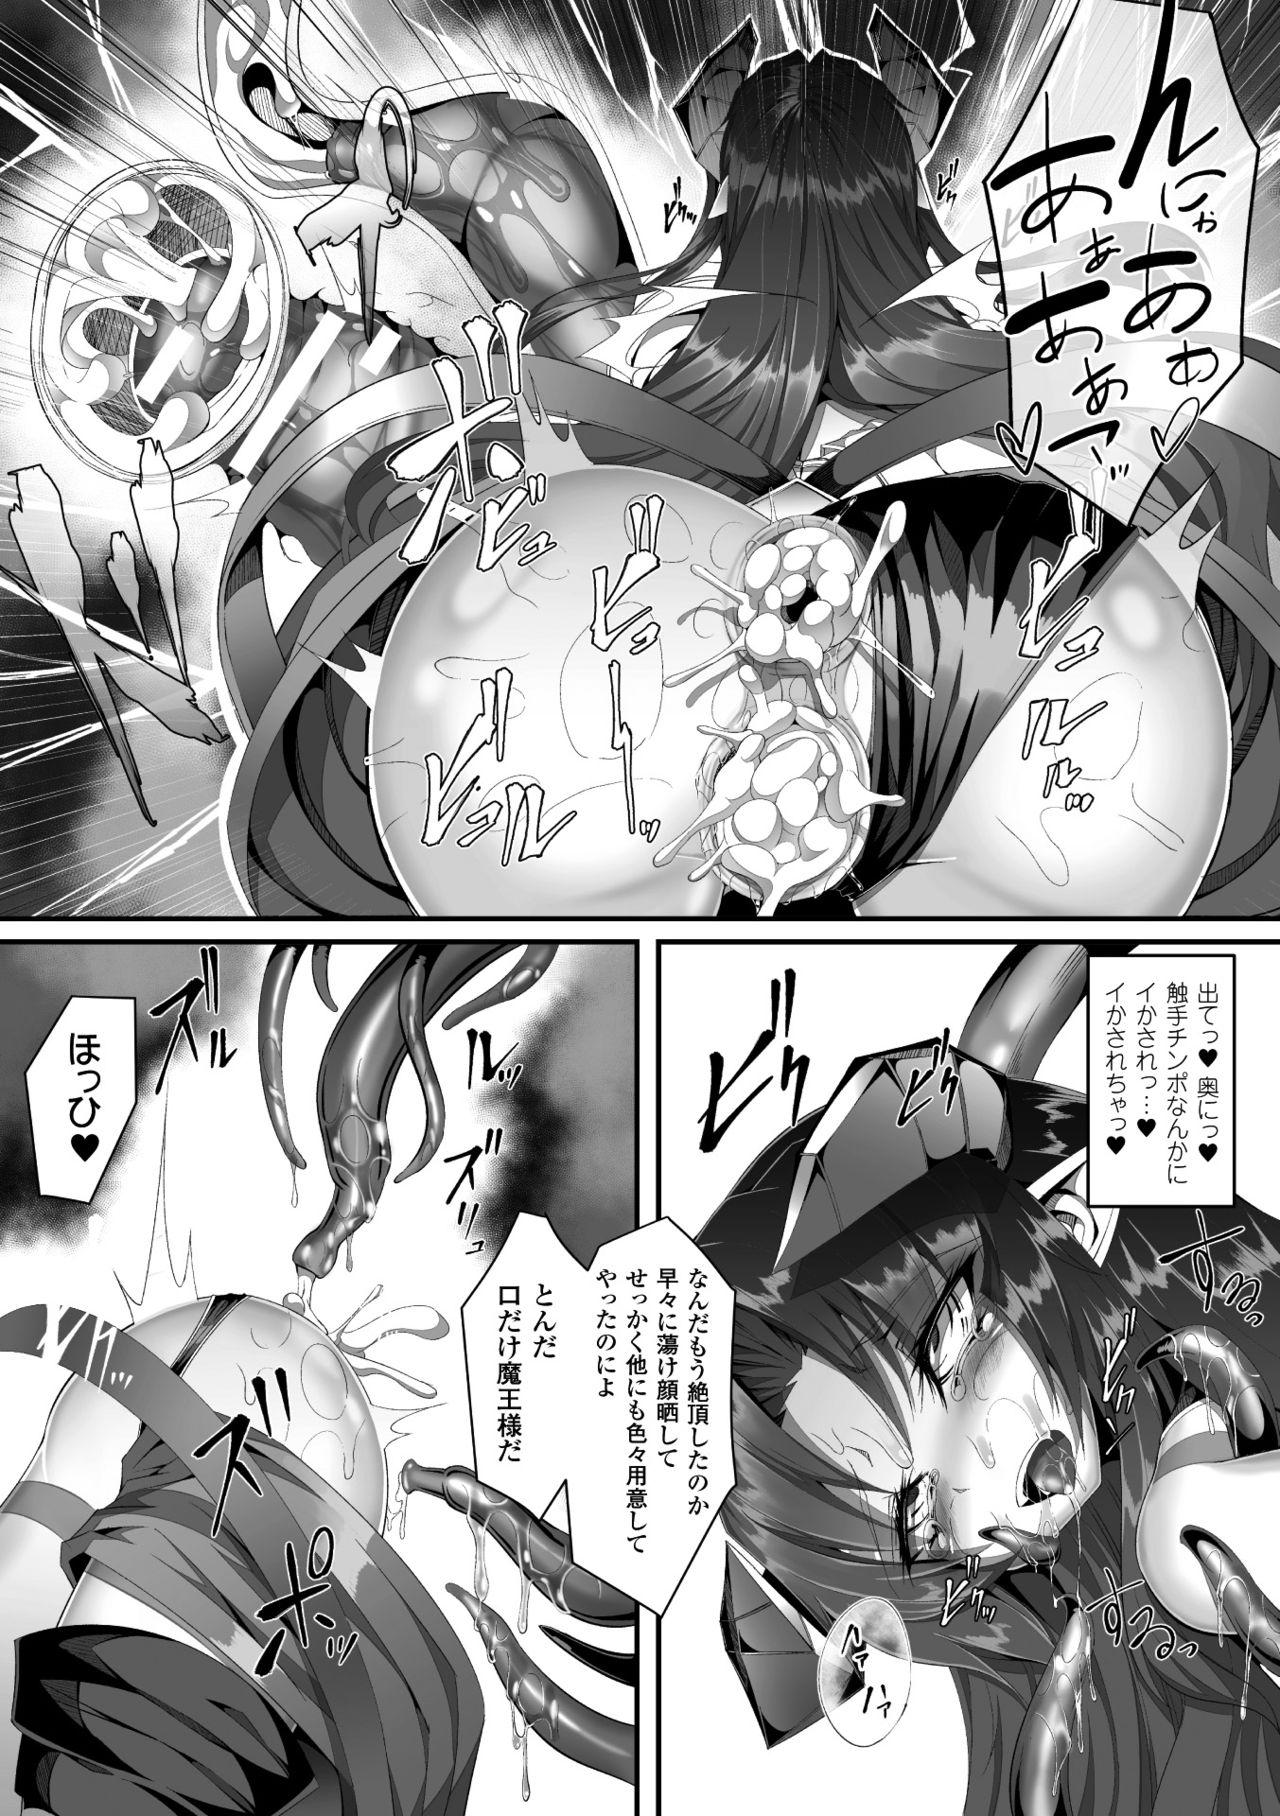 2D Comic Magazine Seieki Bote Shite Gyakufunsha Acme! Vol. 1 11